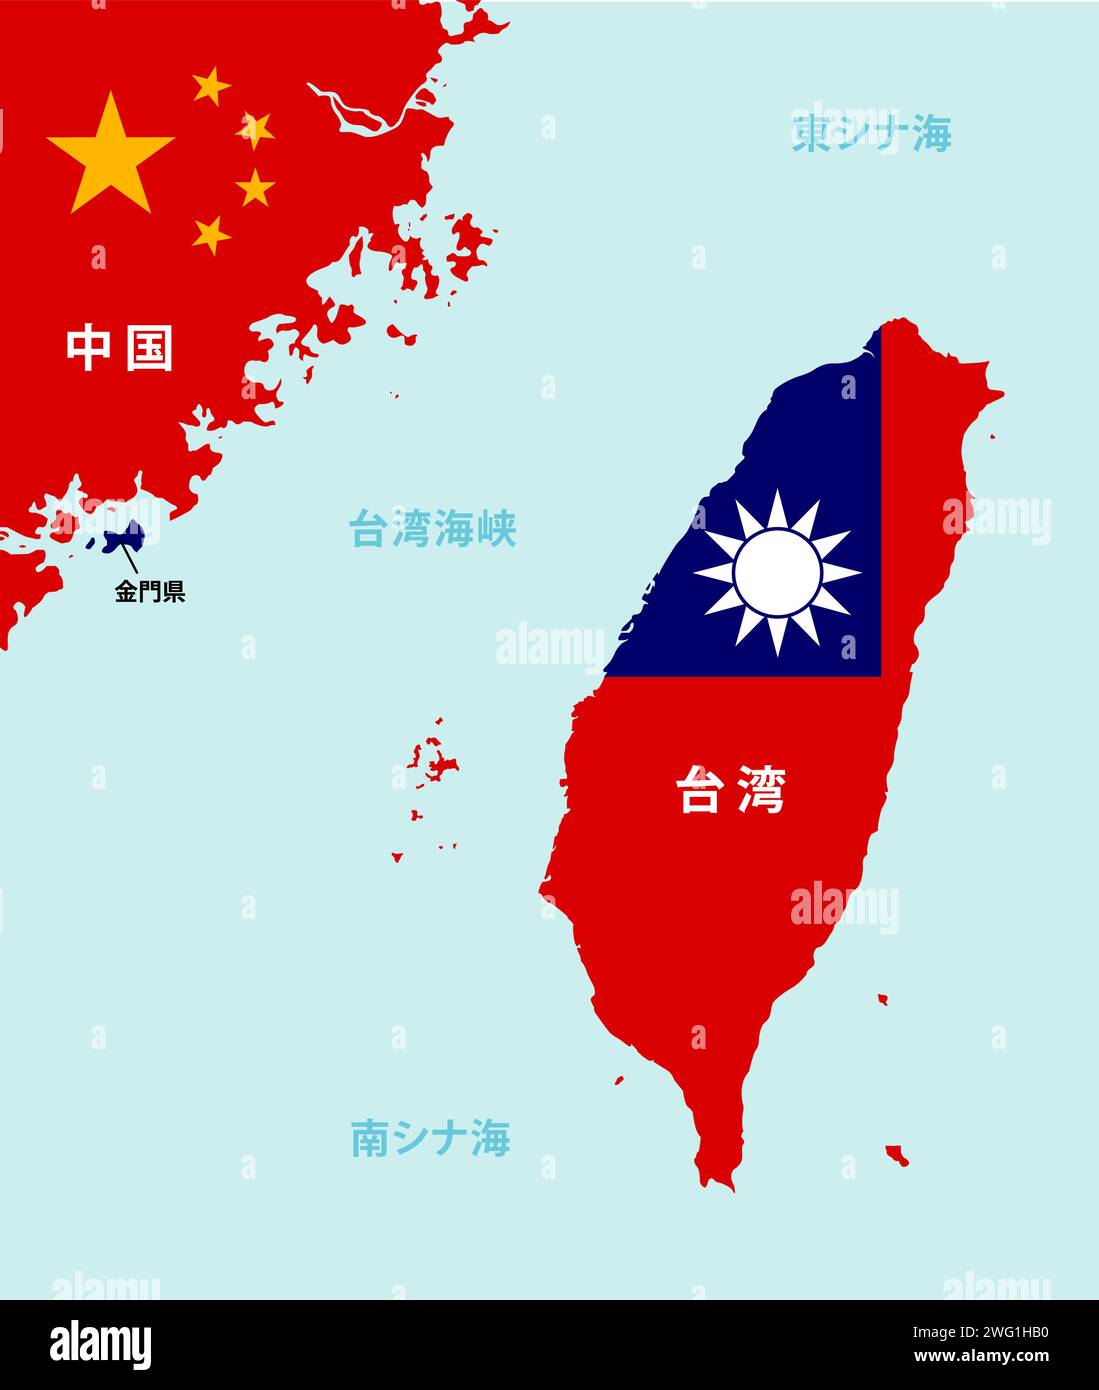 Illustration von Taiwan und Taiwan Strait Map Stock Vektor